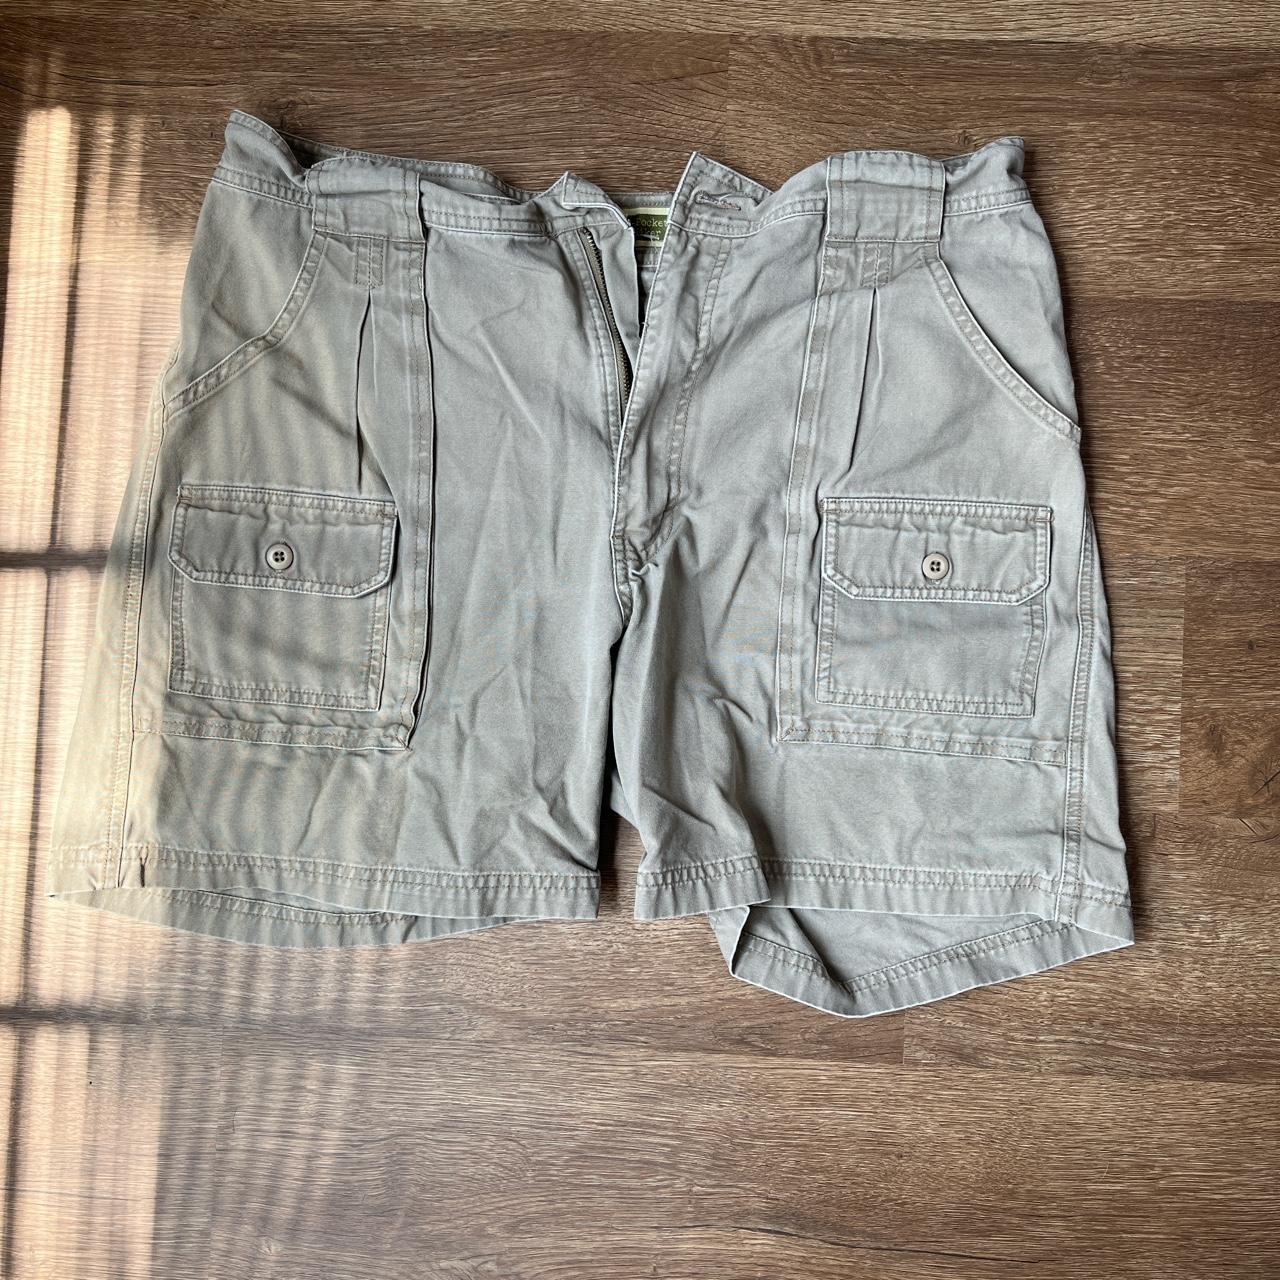 Cabela's Men's Shorts | Depop